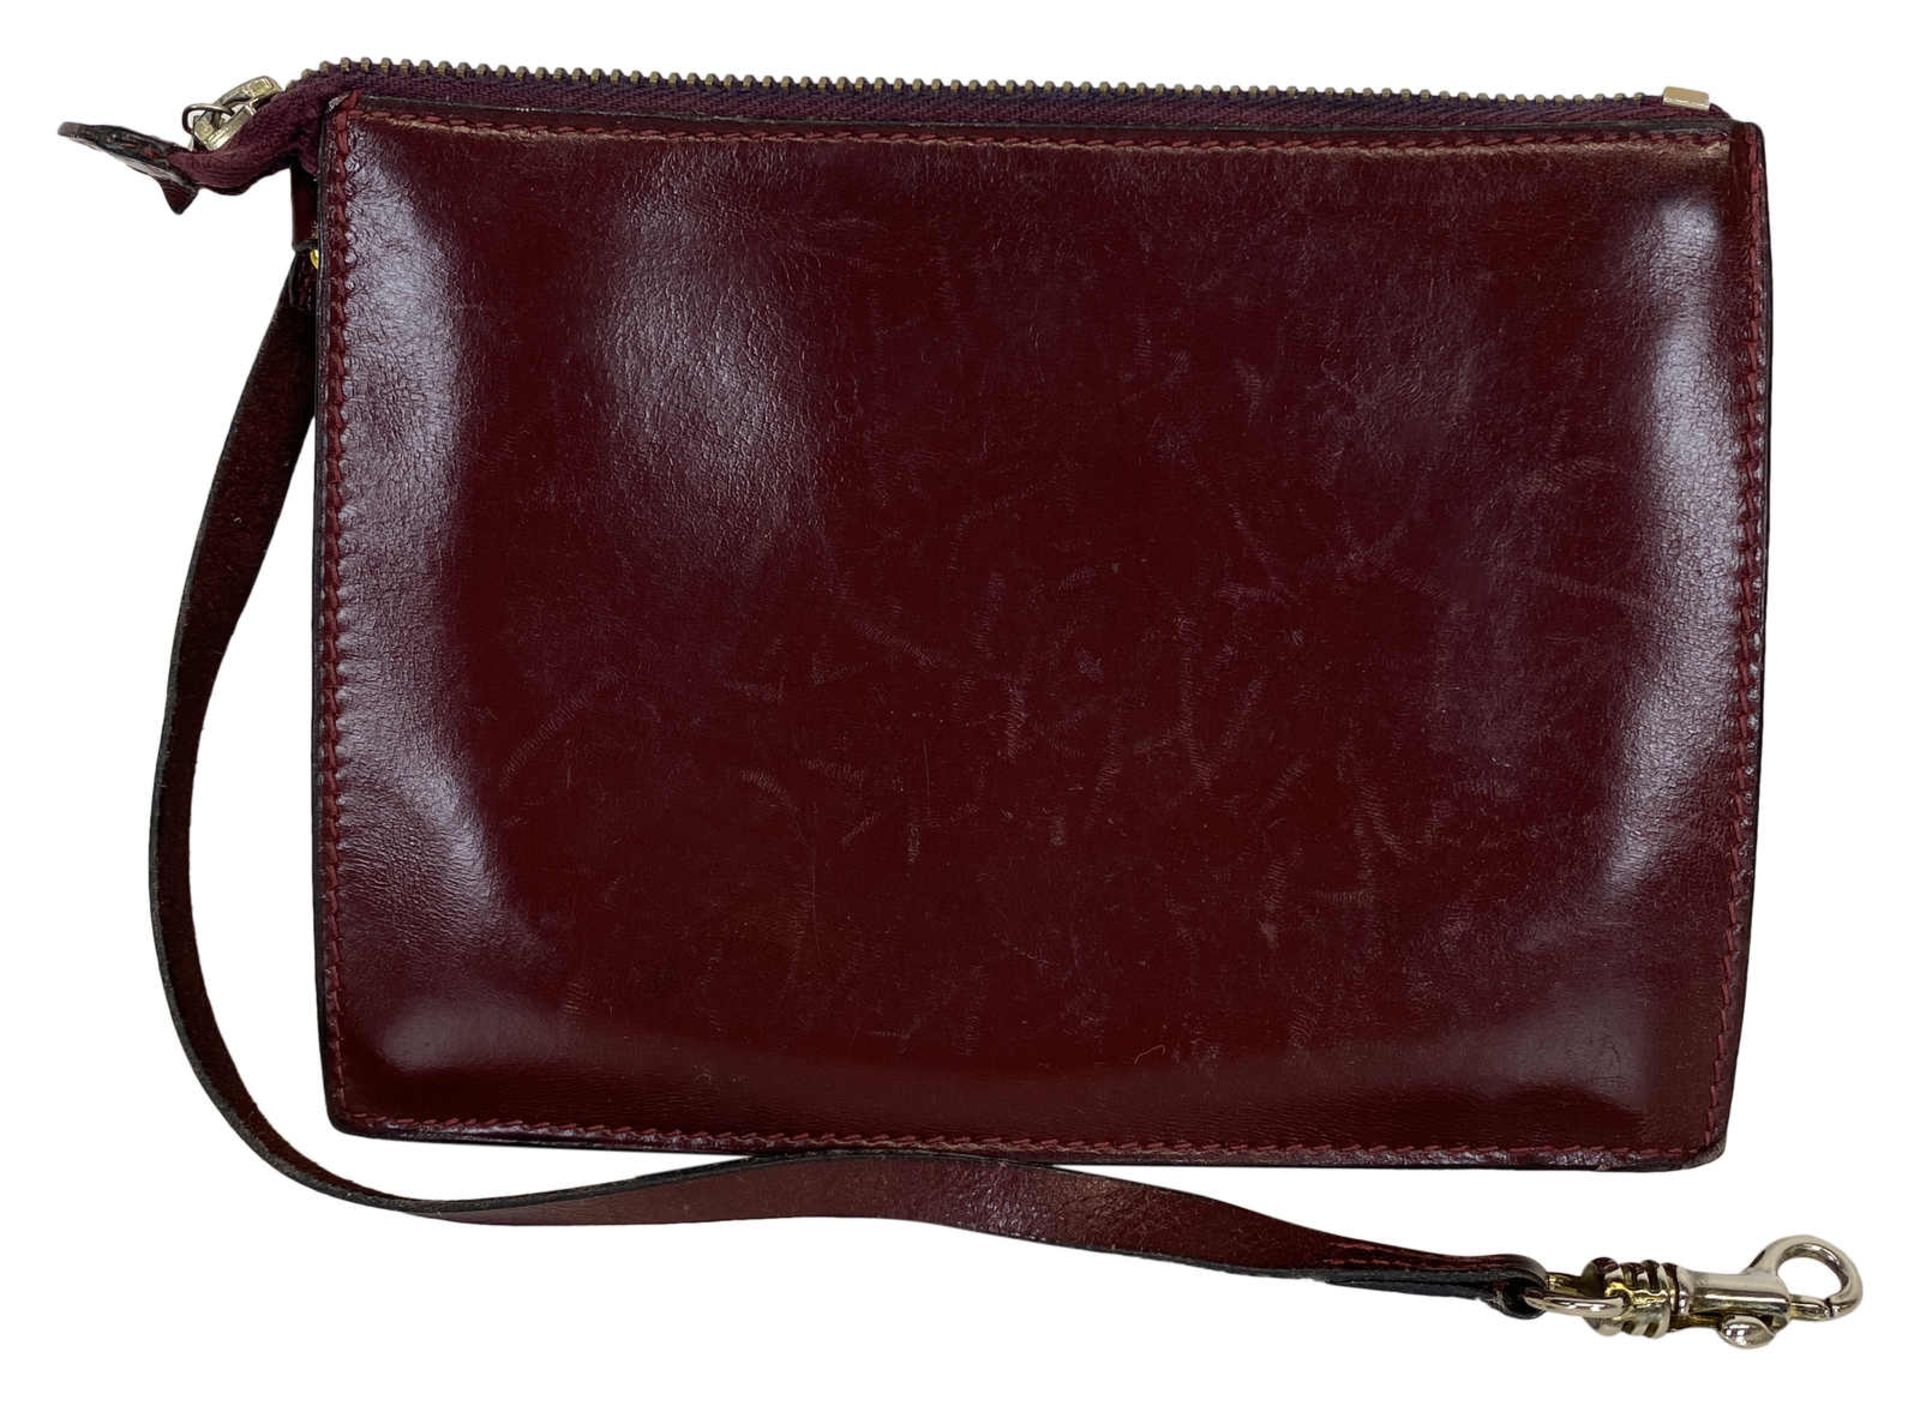 HERMÈS Handtasche Trim Handbag in burgunderrotem Leder aus dem Jahr 1971. Die 1958 entworfene und - Bild 2 aus 5